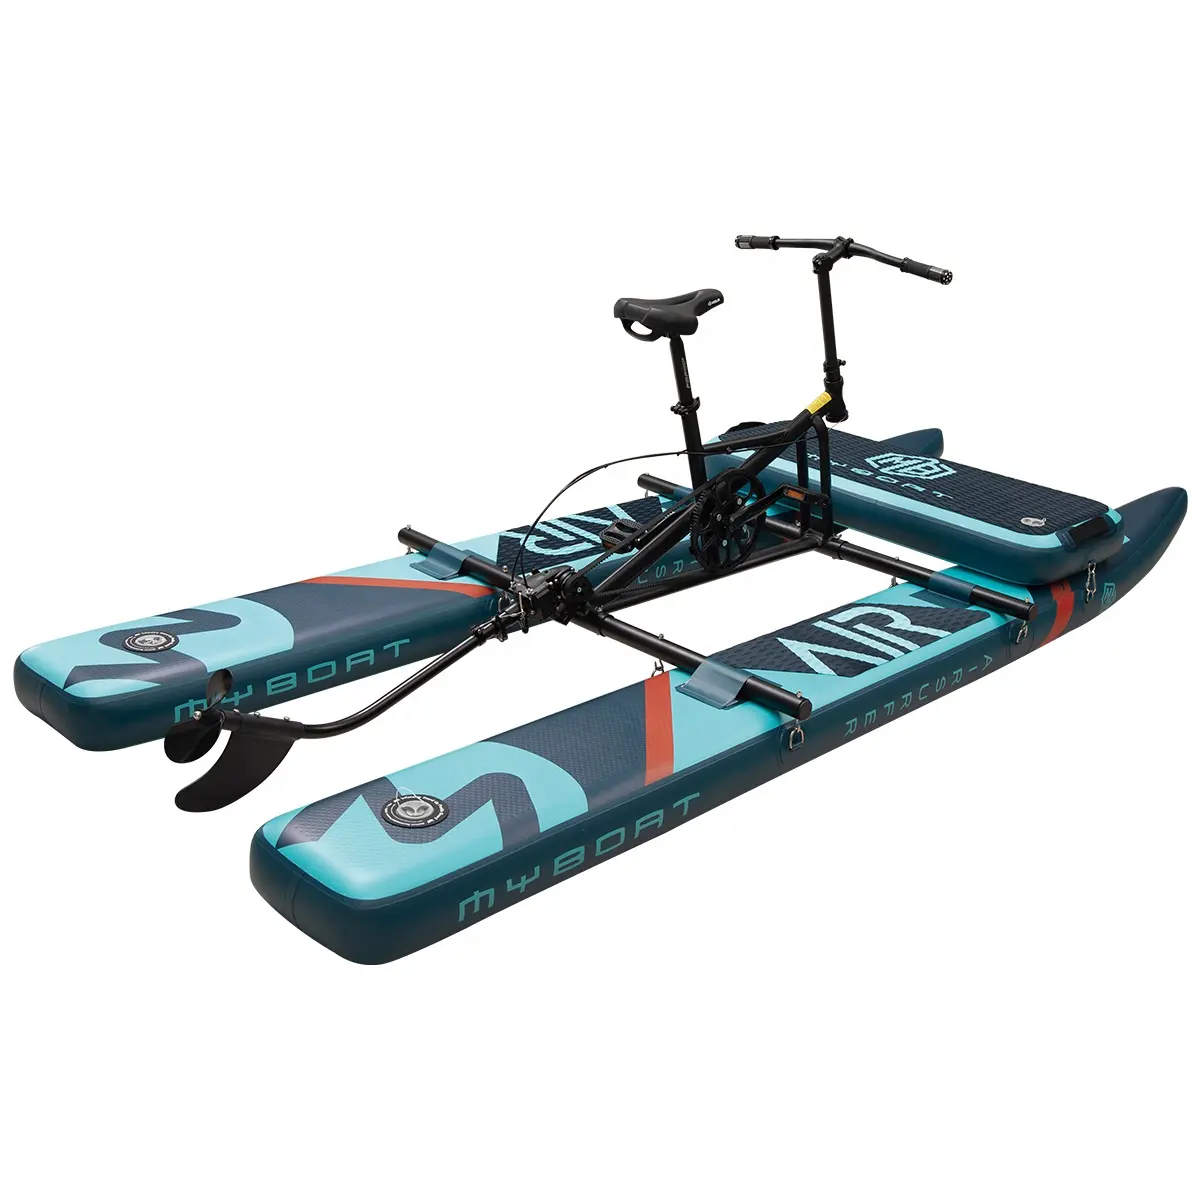 Neues Produkt Fahrräder Meerwasser Fahrrad See Fahrrad Leicht gewicht Klapp rad Pedal Aufblasbares Float Wasser Fahrrad